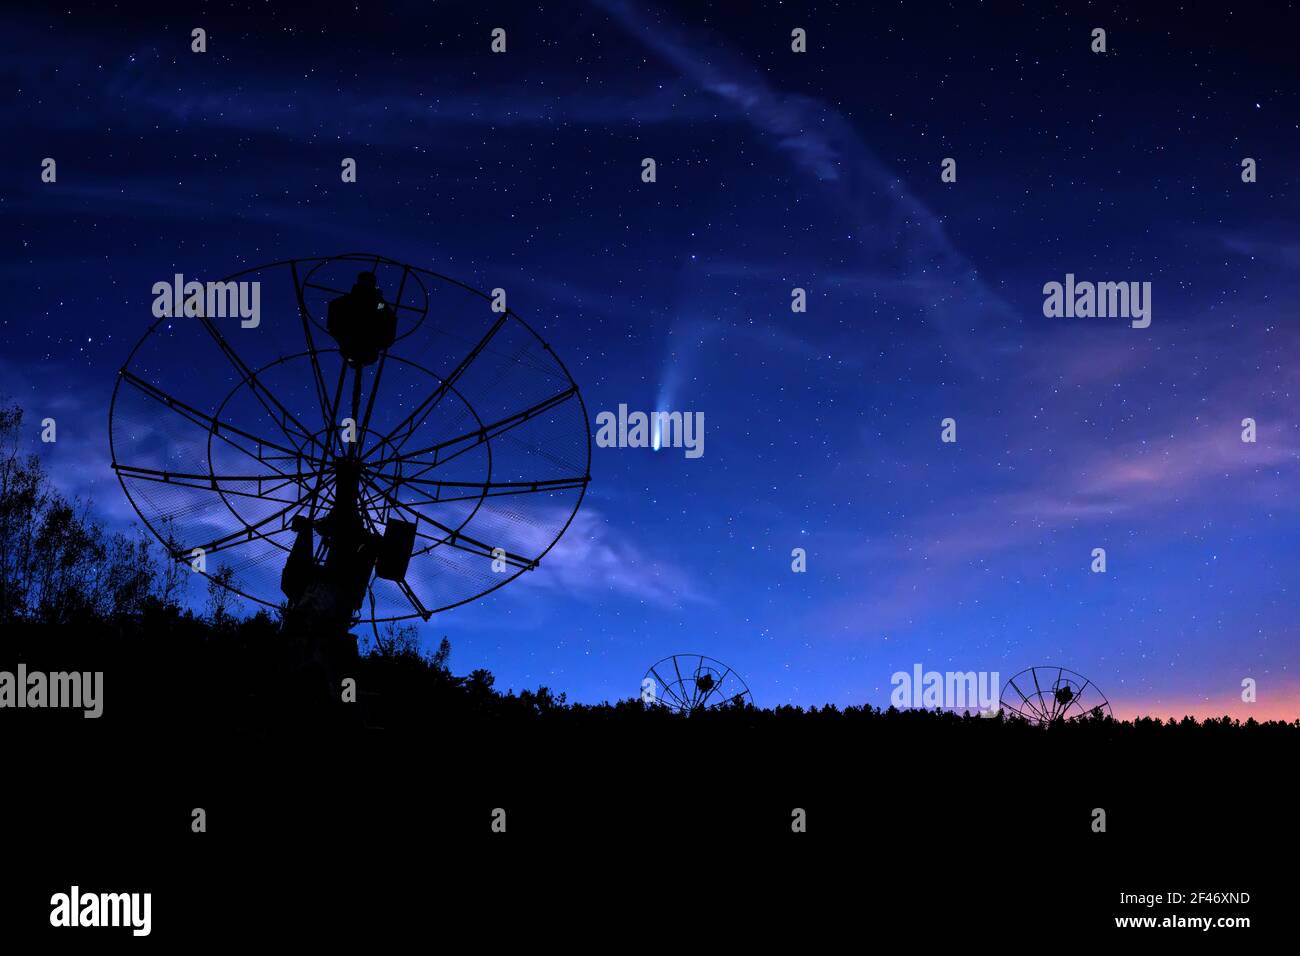 radiotelescopes silhouettes sous nuit étoilée ciel nuageux fond Banque D'Images